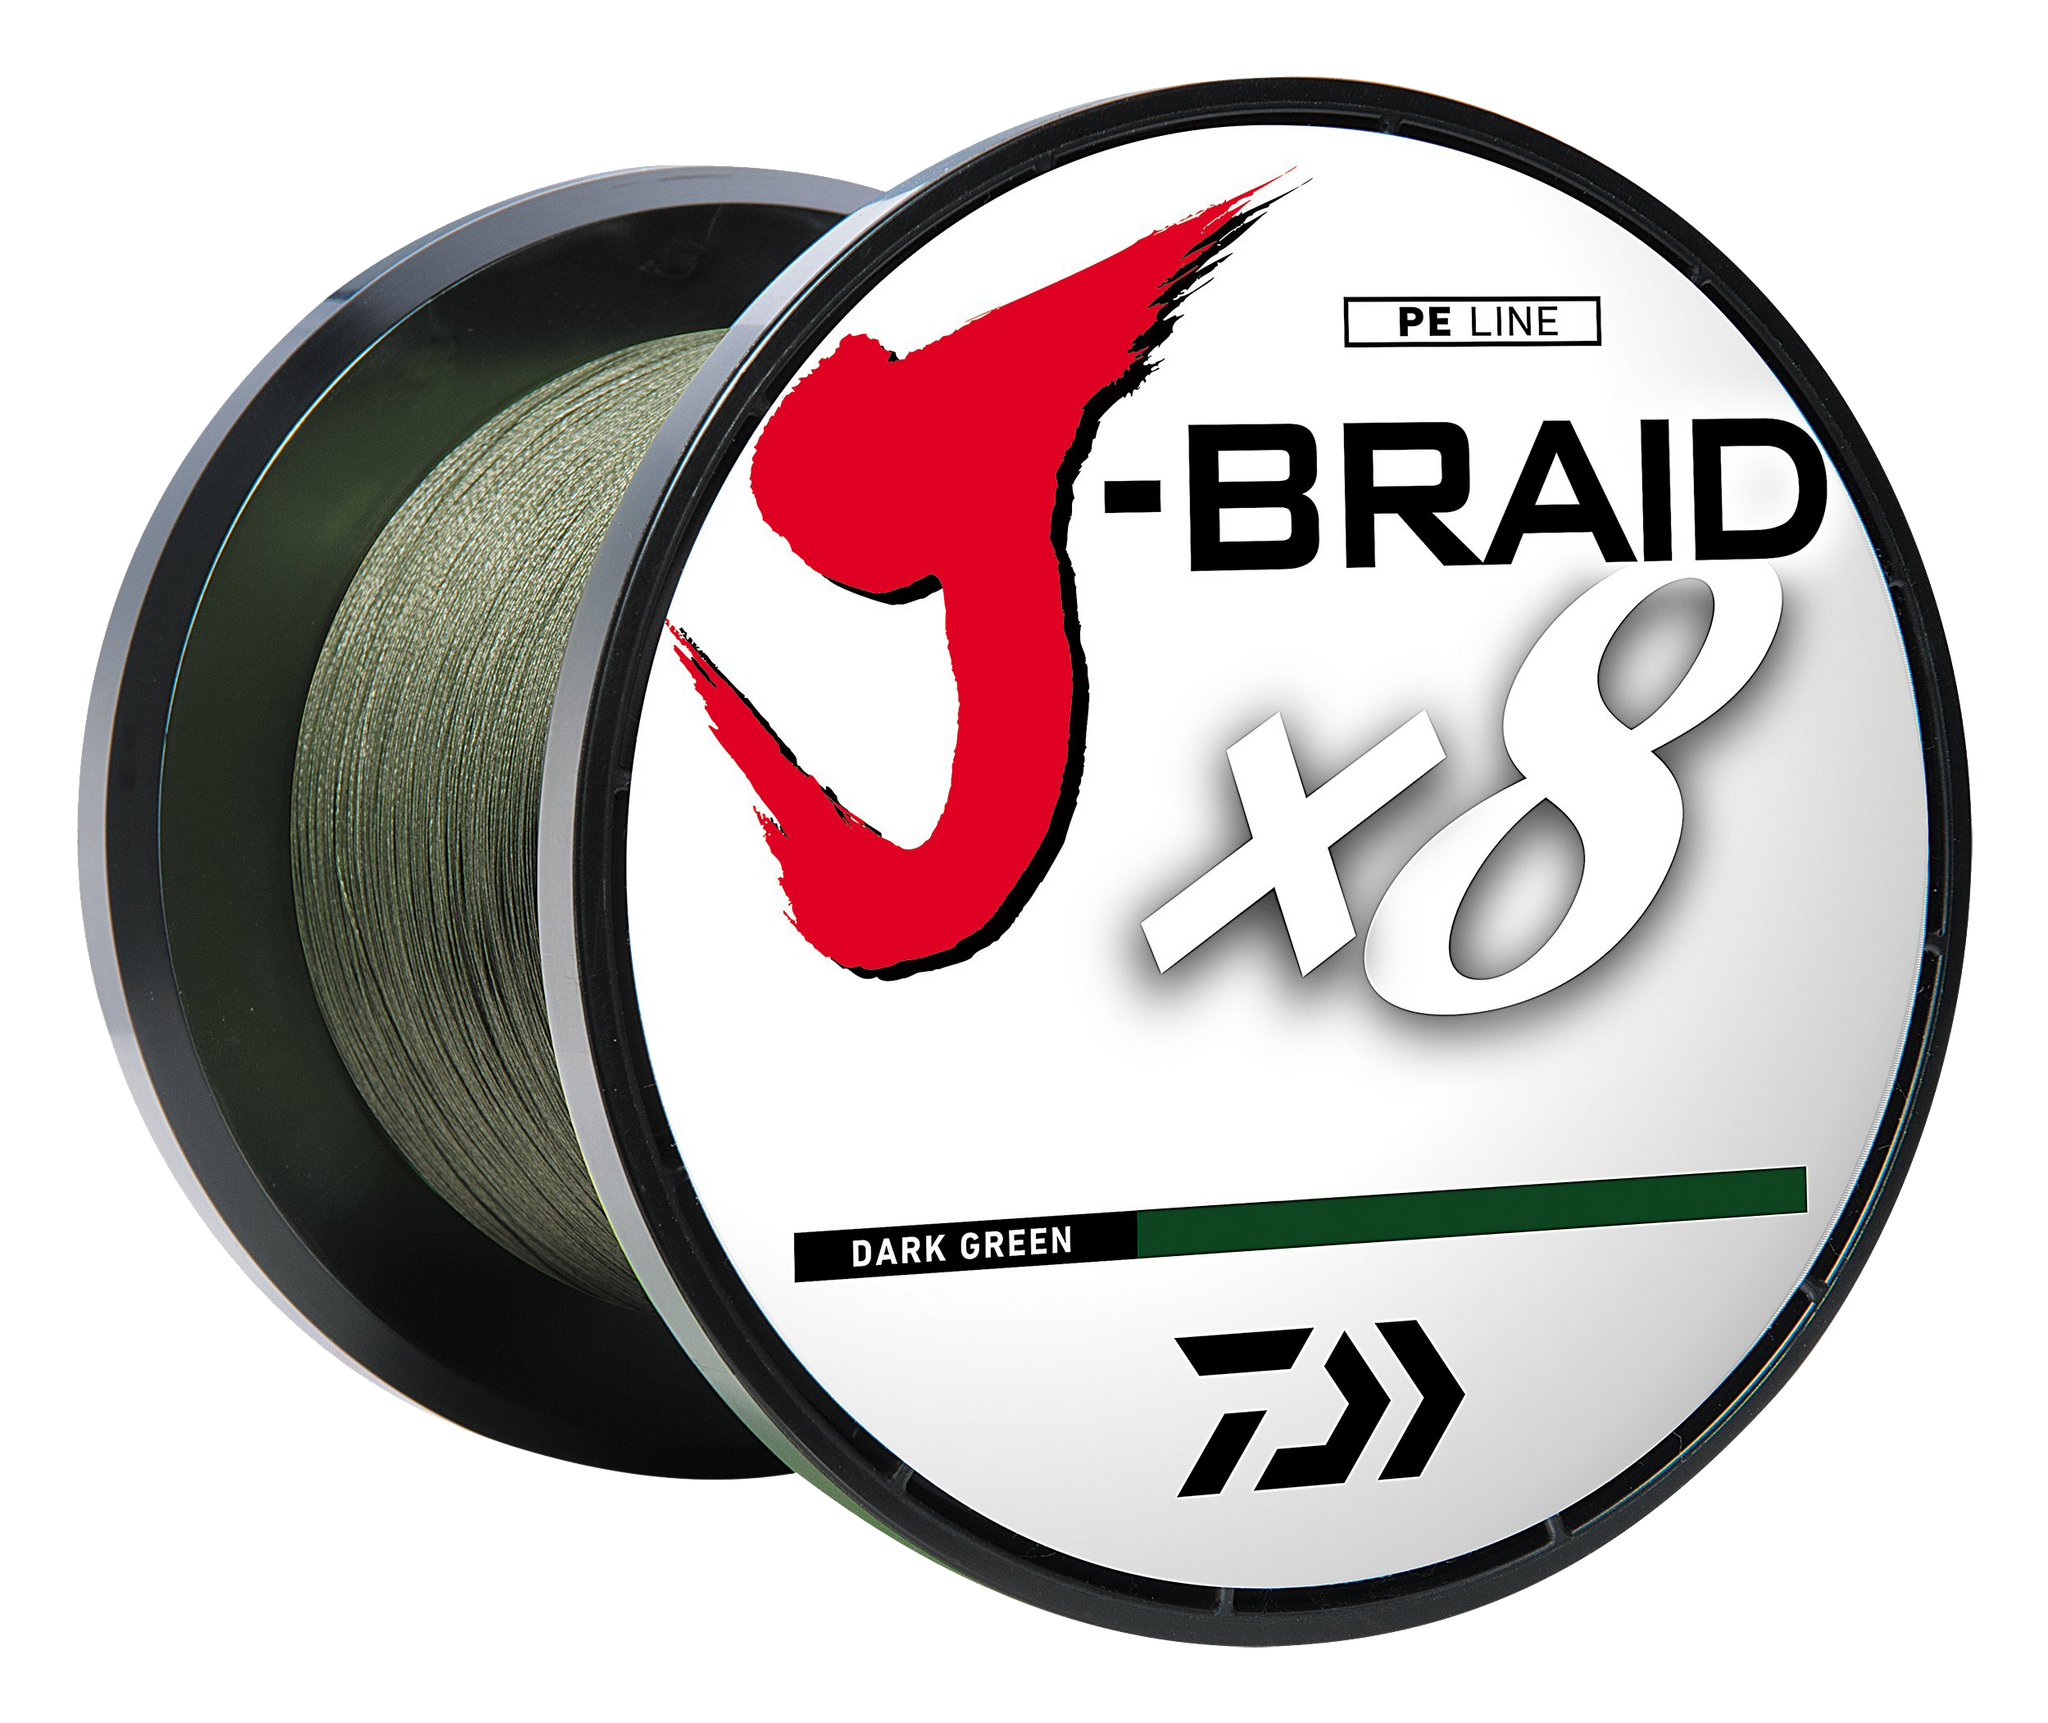 J-BRAID x8 GRAND BRAIDED LINE - MULTI COLOR – Daiwa US